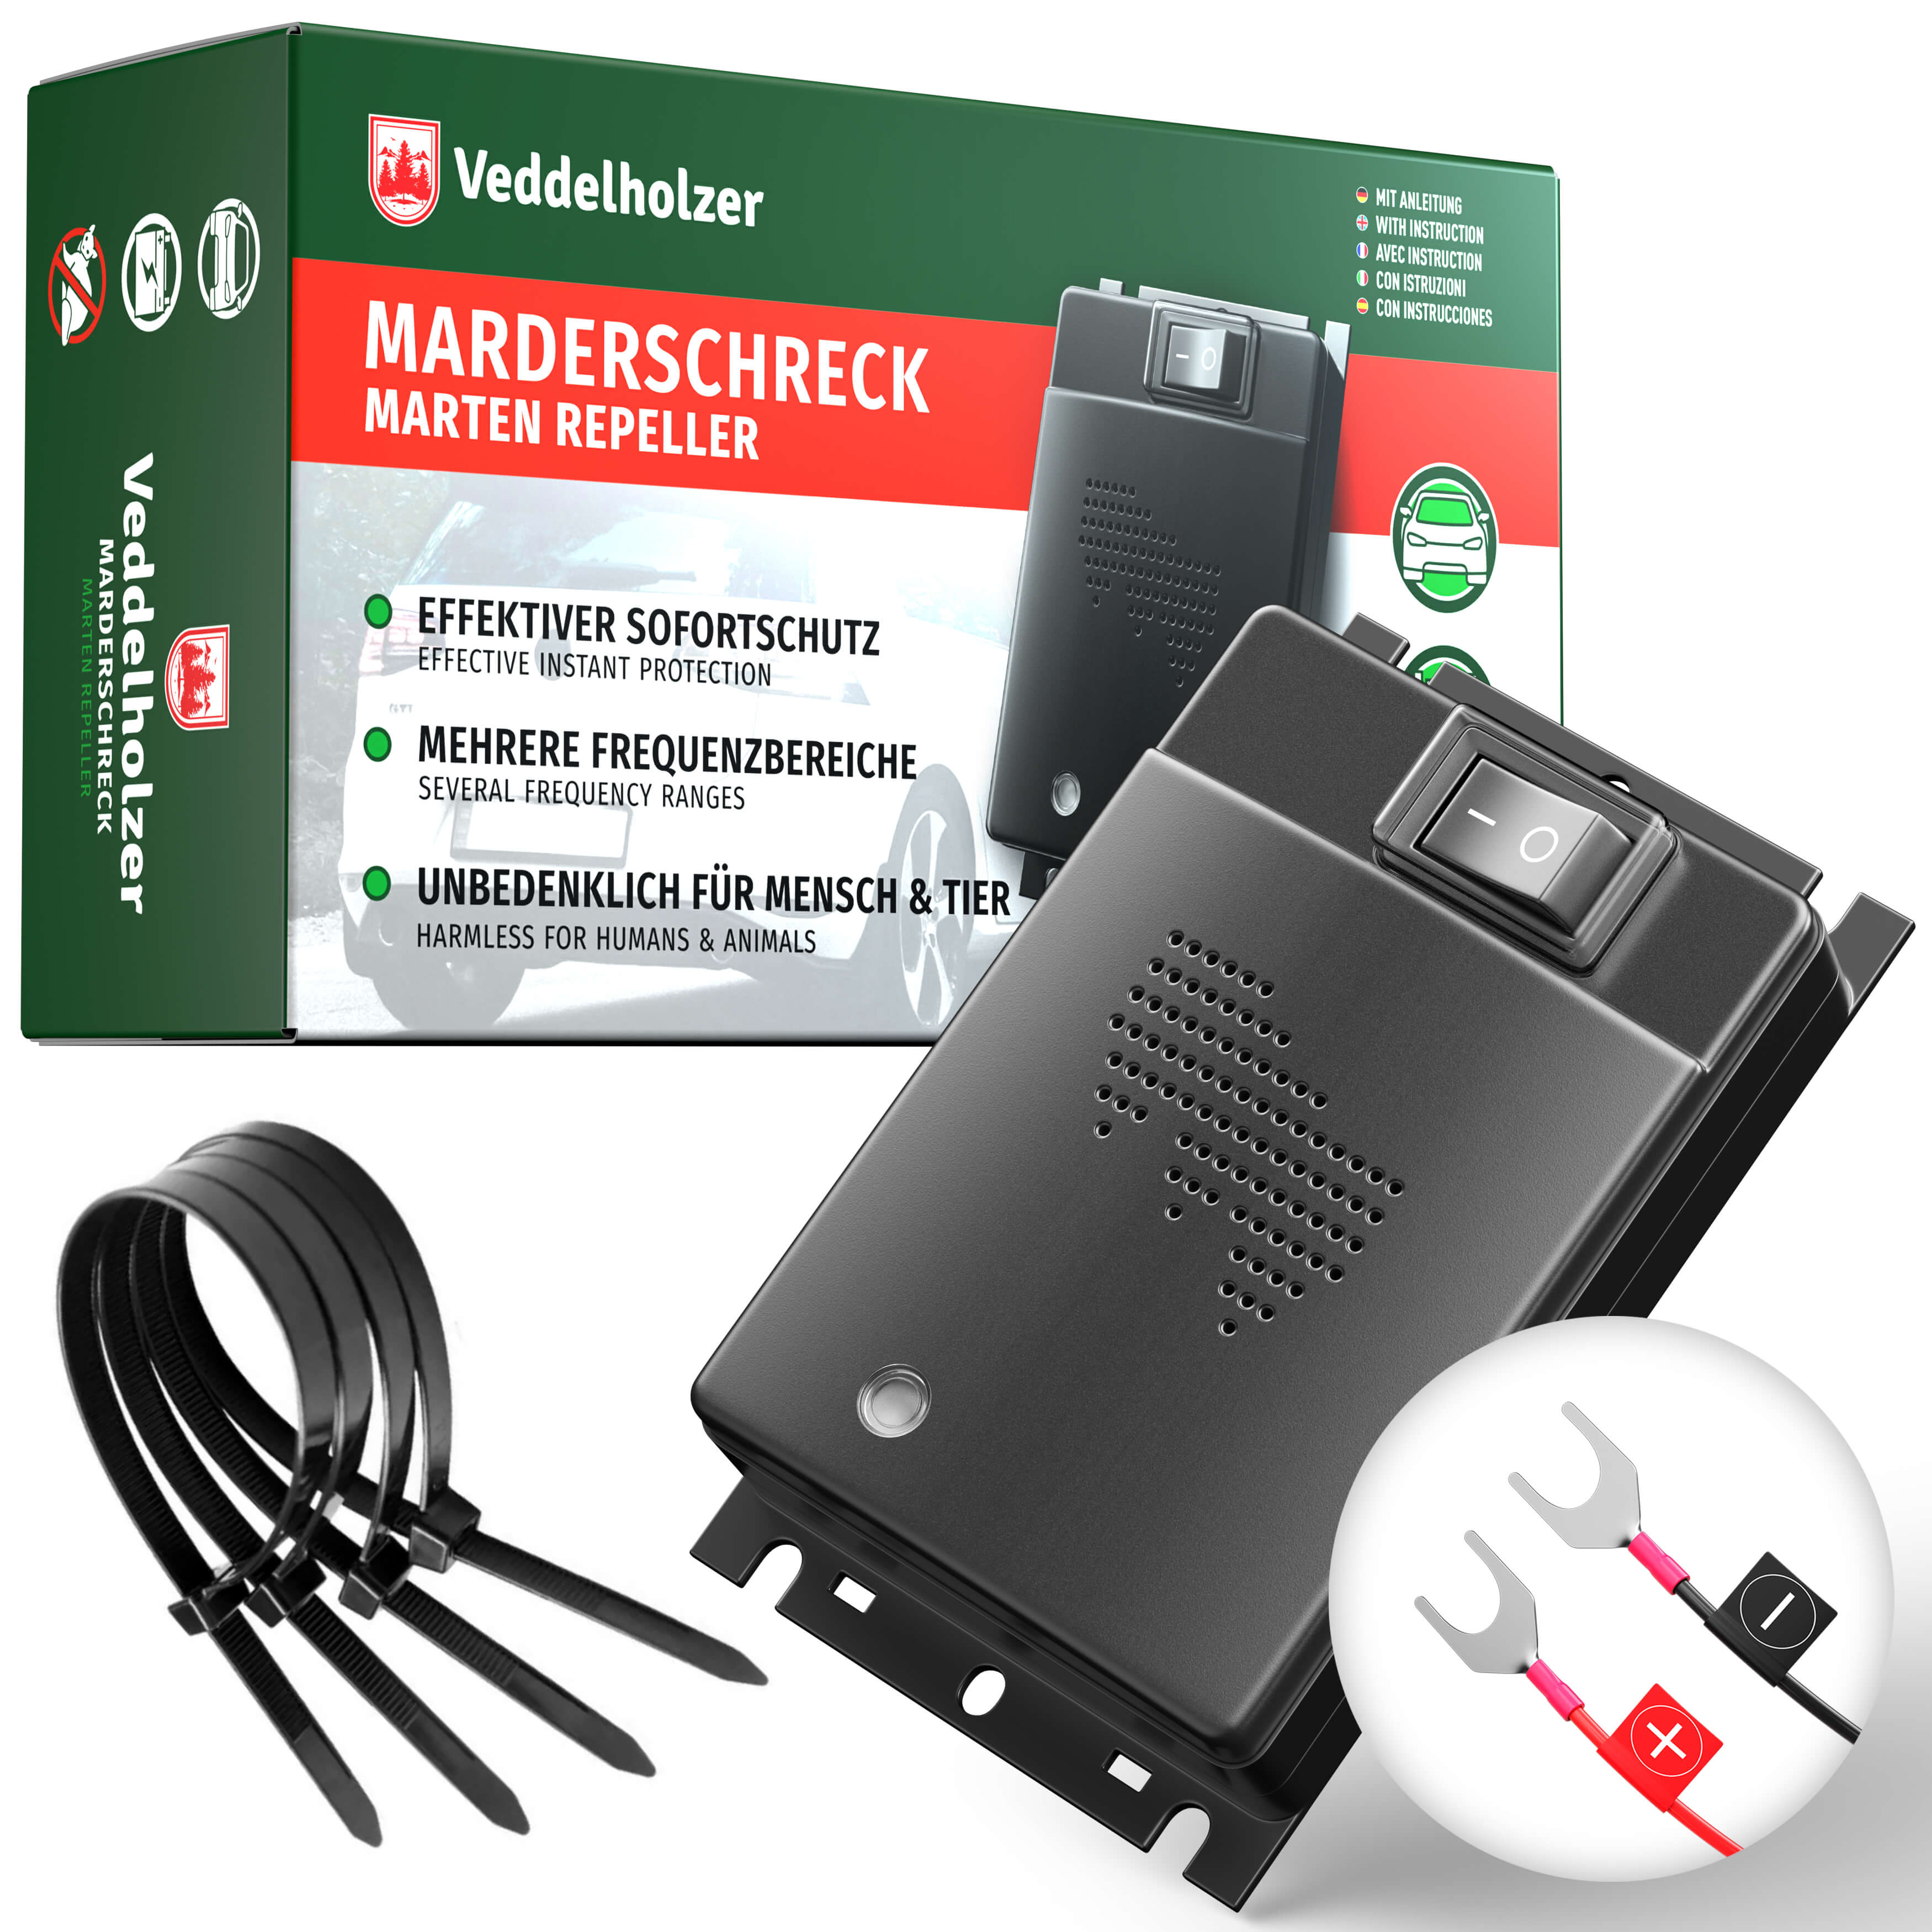 Ultraschall Marderschreck 12V Marderabwehr Marderschutz Marderfrei Marder  Auto 4024028031002